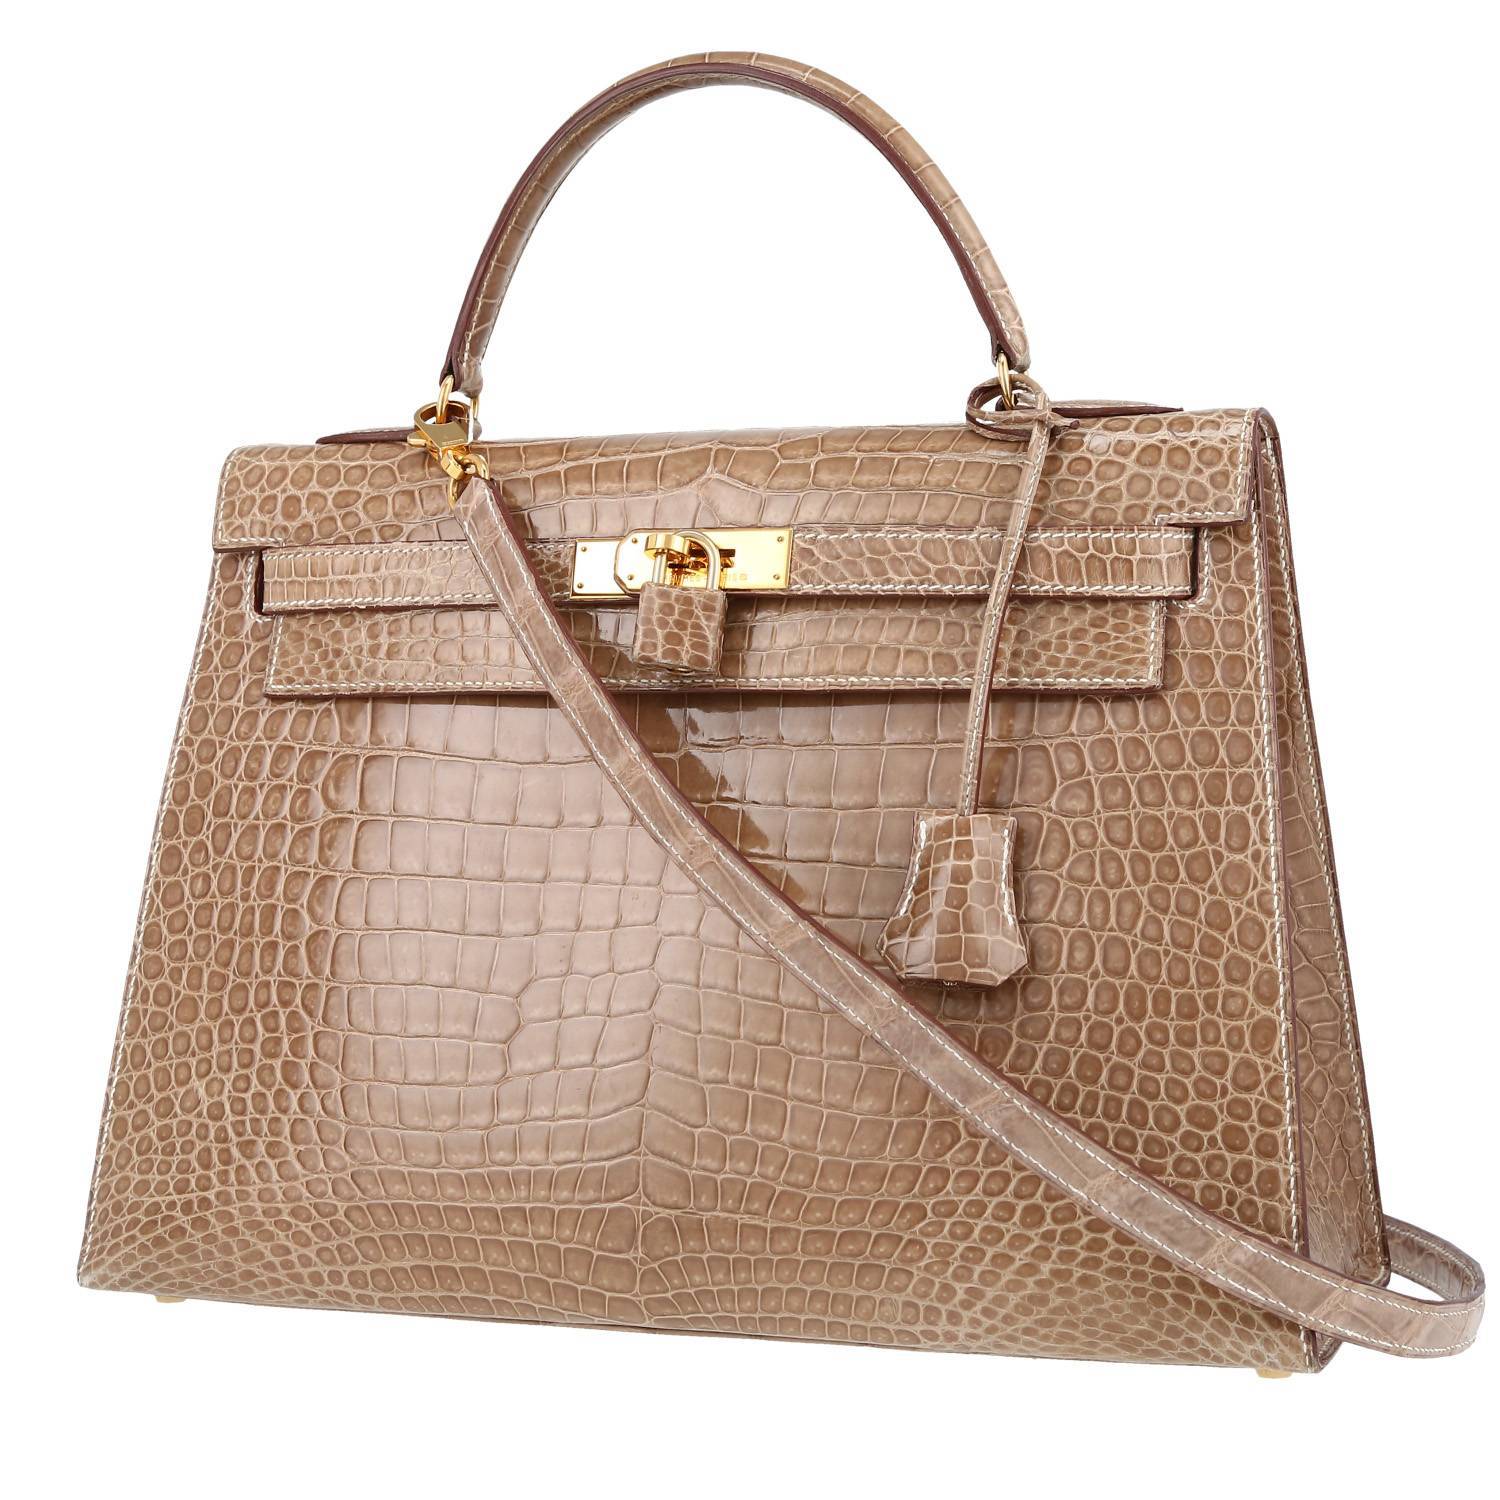 Hermes Kelly 32 cm handbag in beige Ficelle porosus crocodile - 00pp